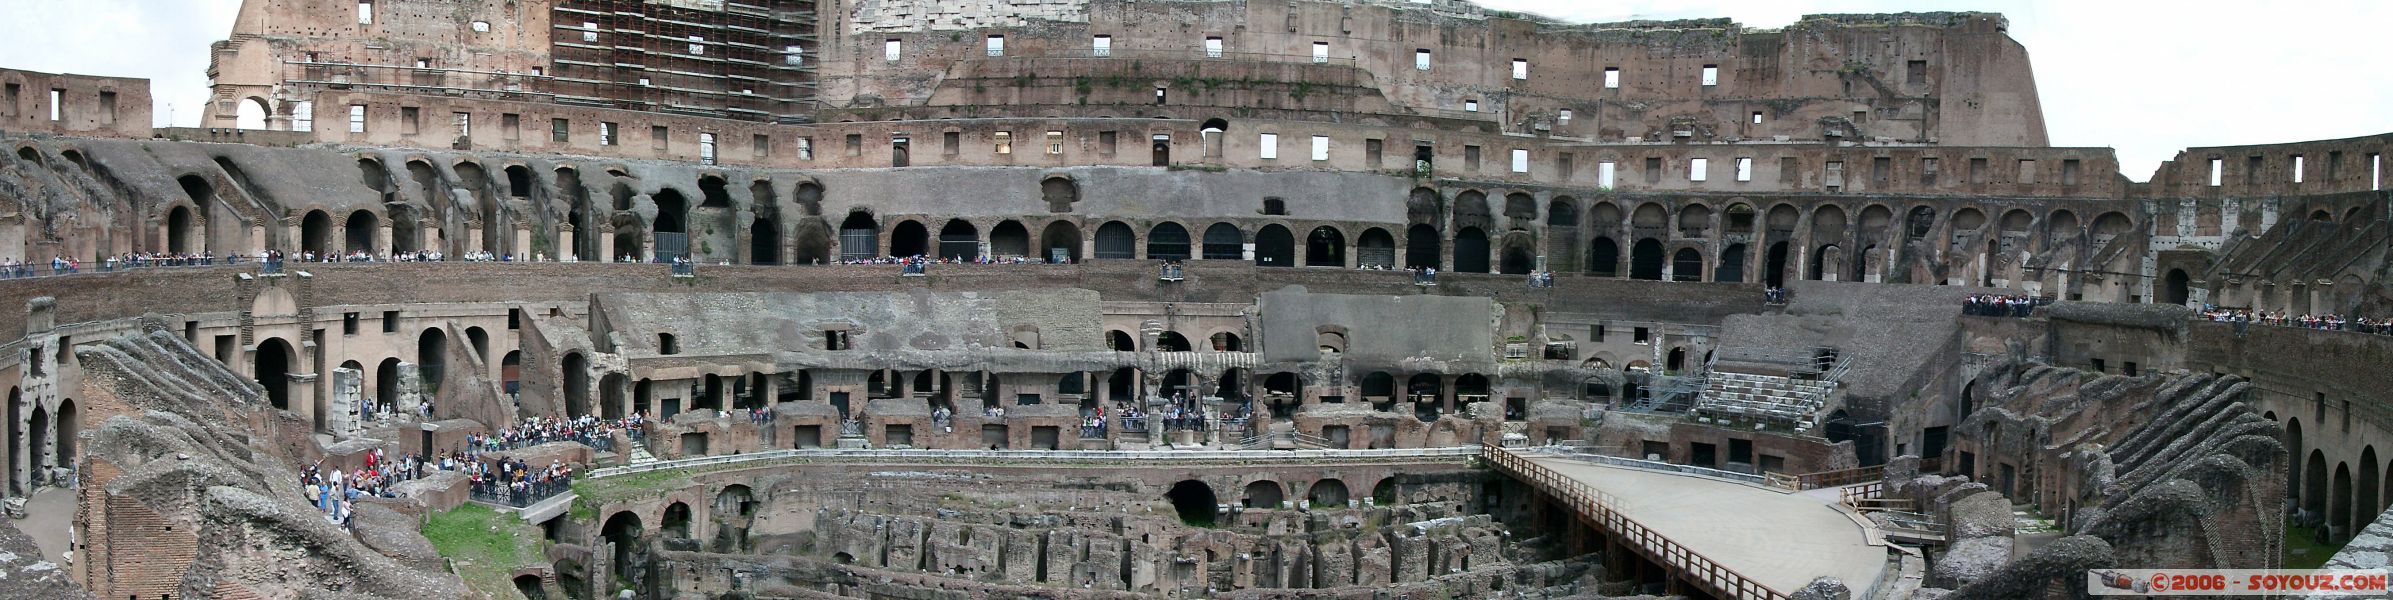 Vue panoramique de l'interieur du Colisee
